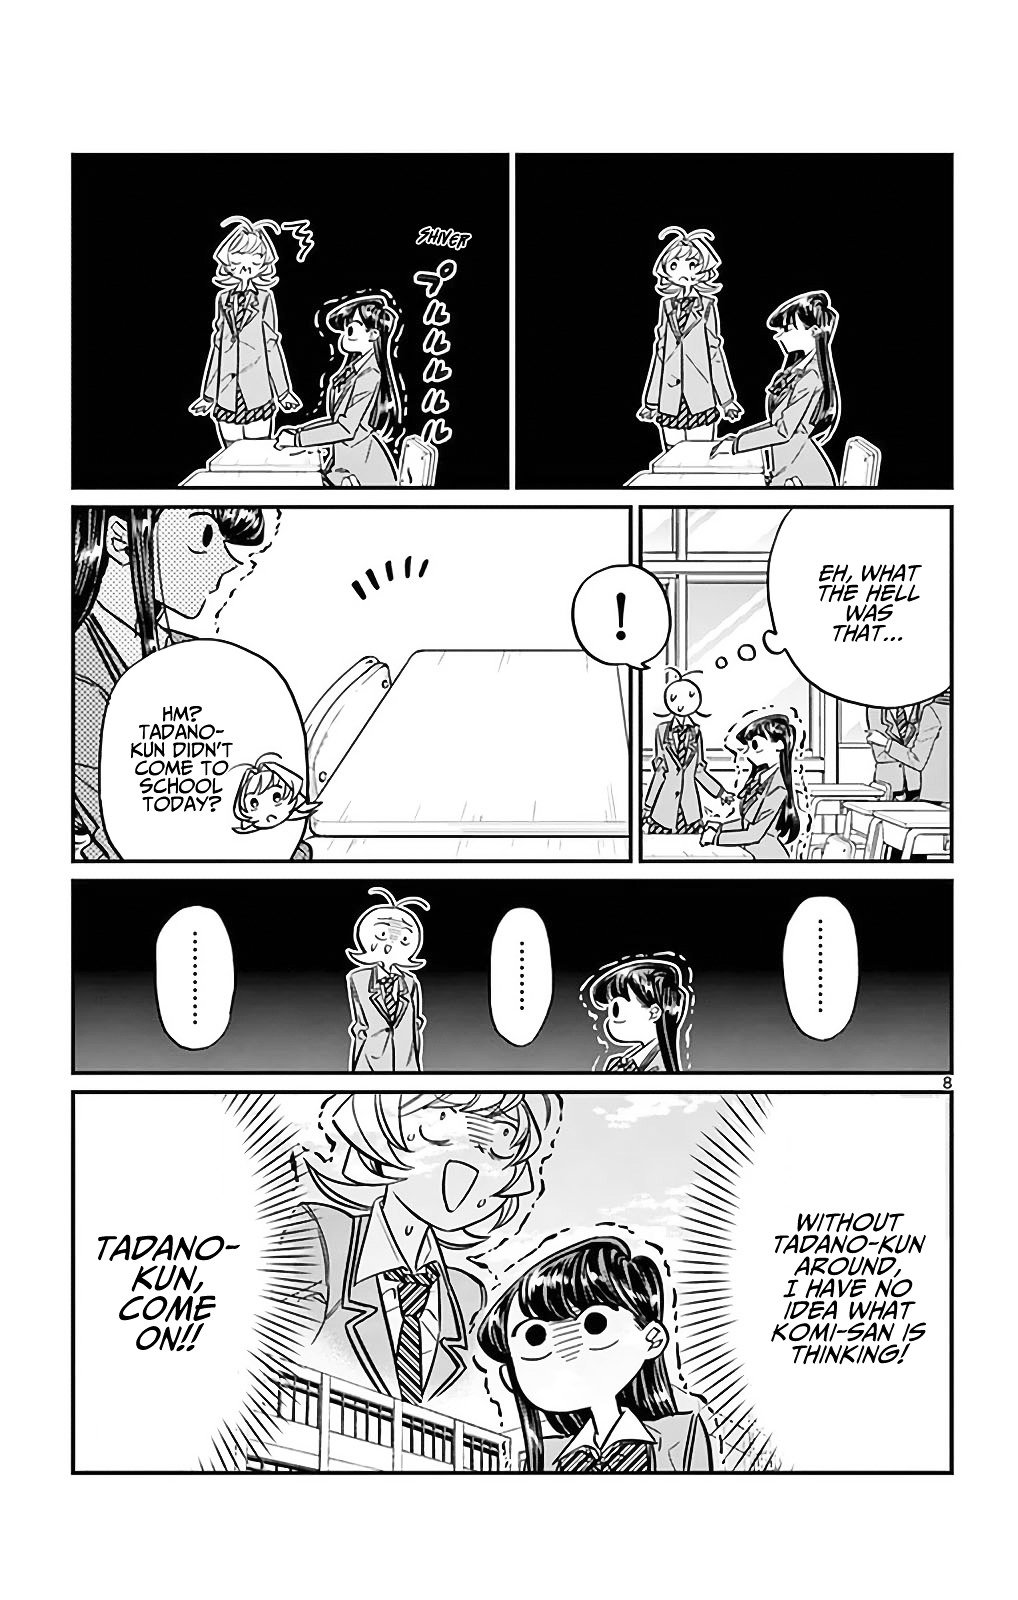 Komi San, Chapter 24 - Komi San Manga Online